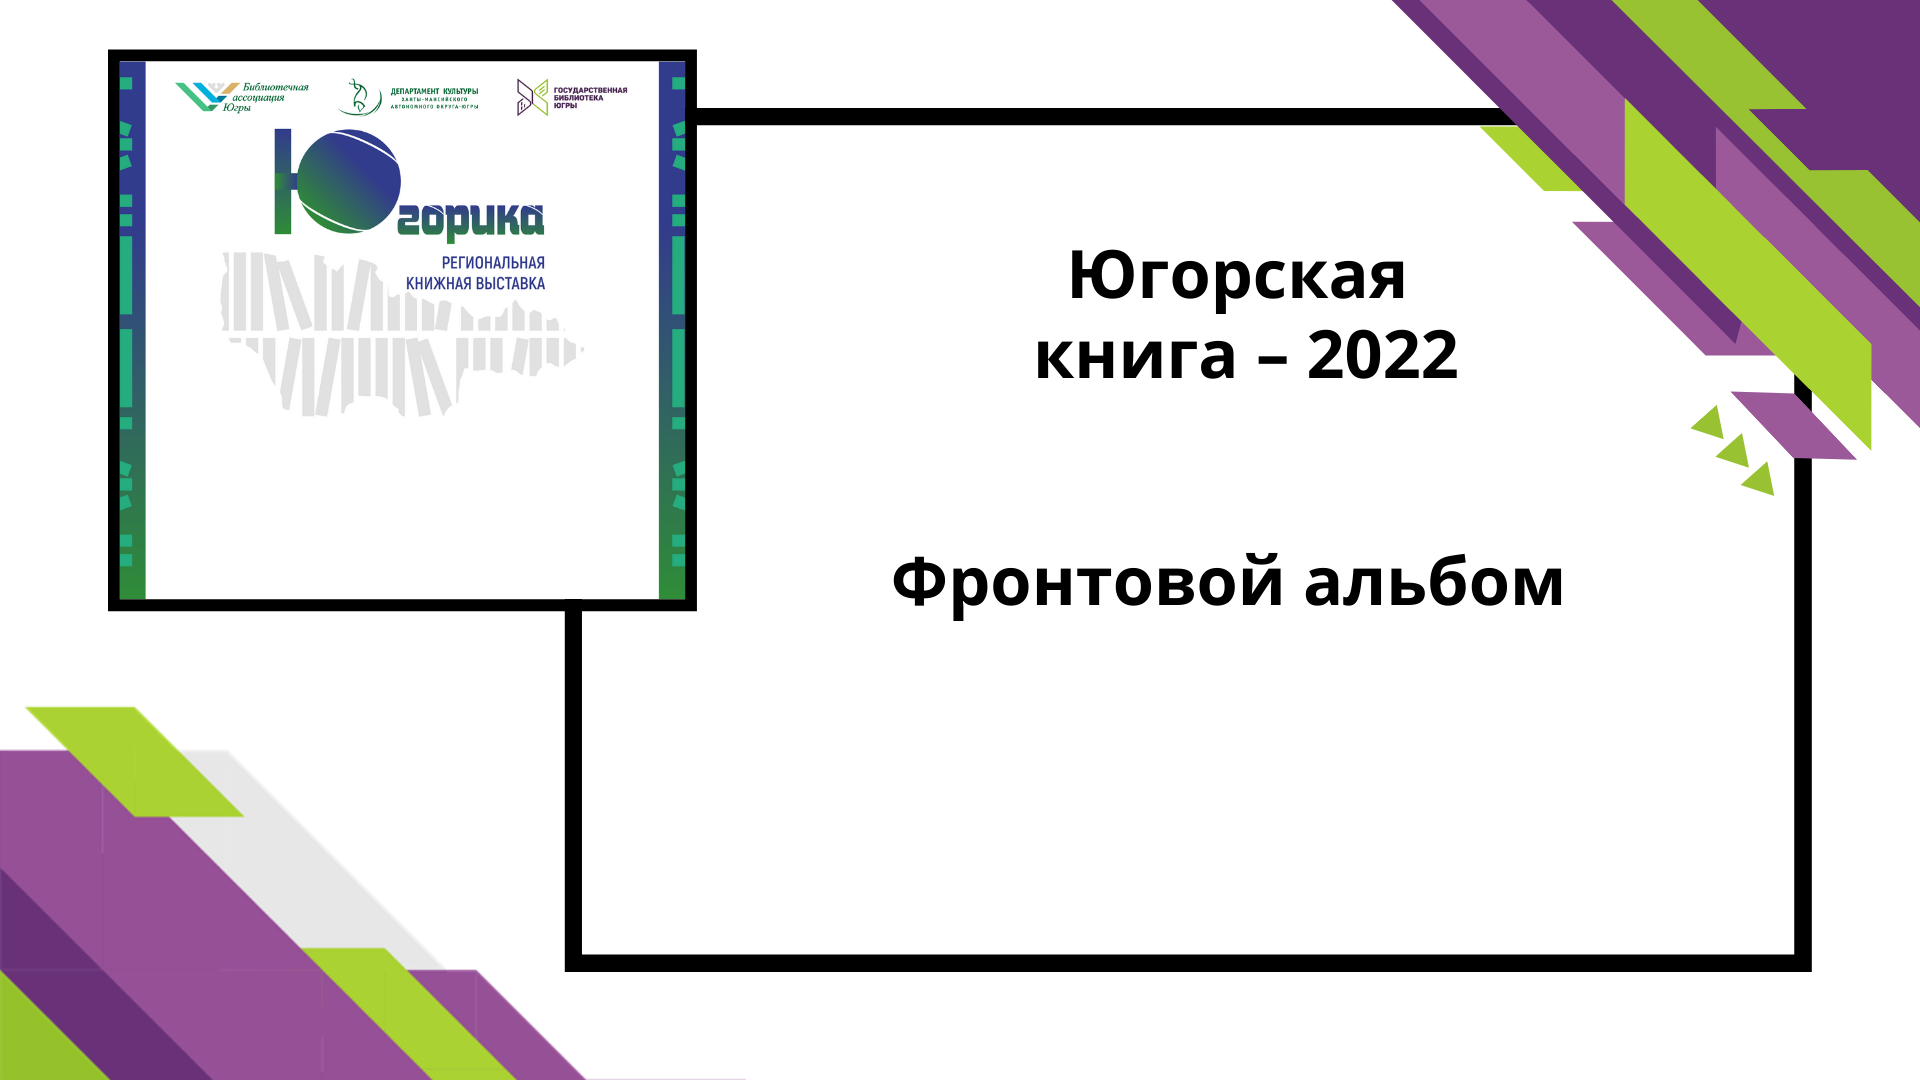 Югорская книга-2022 Фронтовой альбом